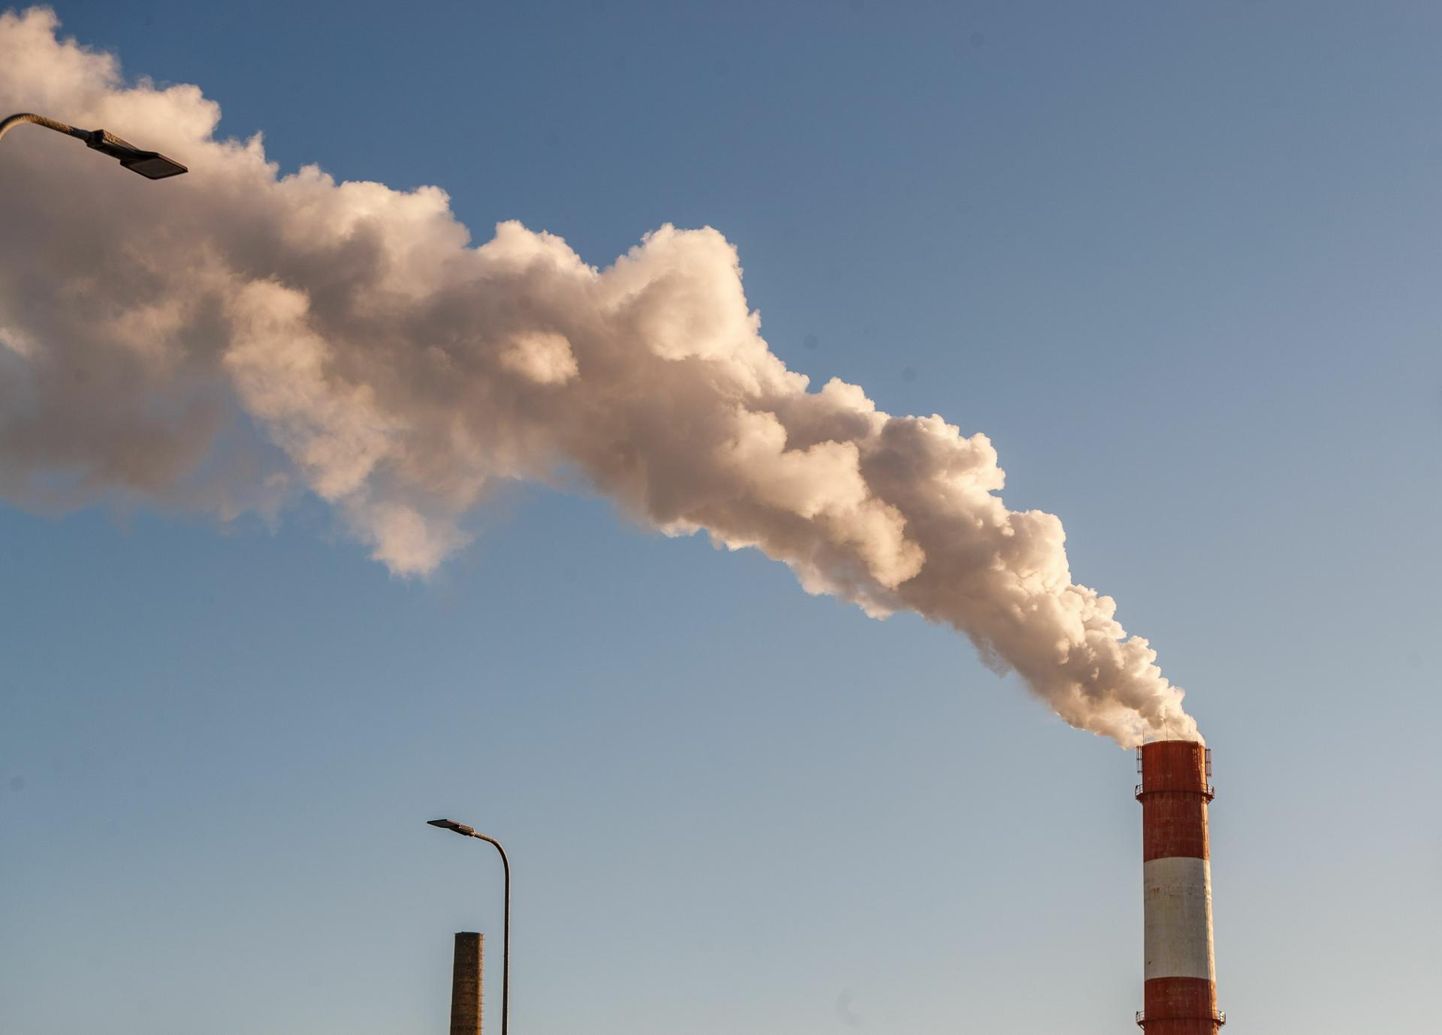 Võrreldes 1990. aastaga olid 2020. aastaks Eestis vähenenud kõigi analüüsitud saasteainete heitkogused õhus.